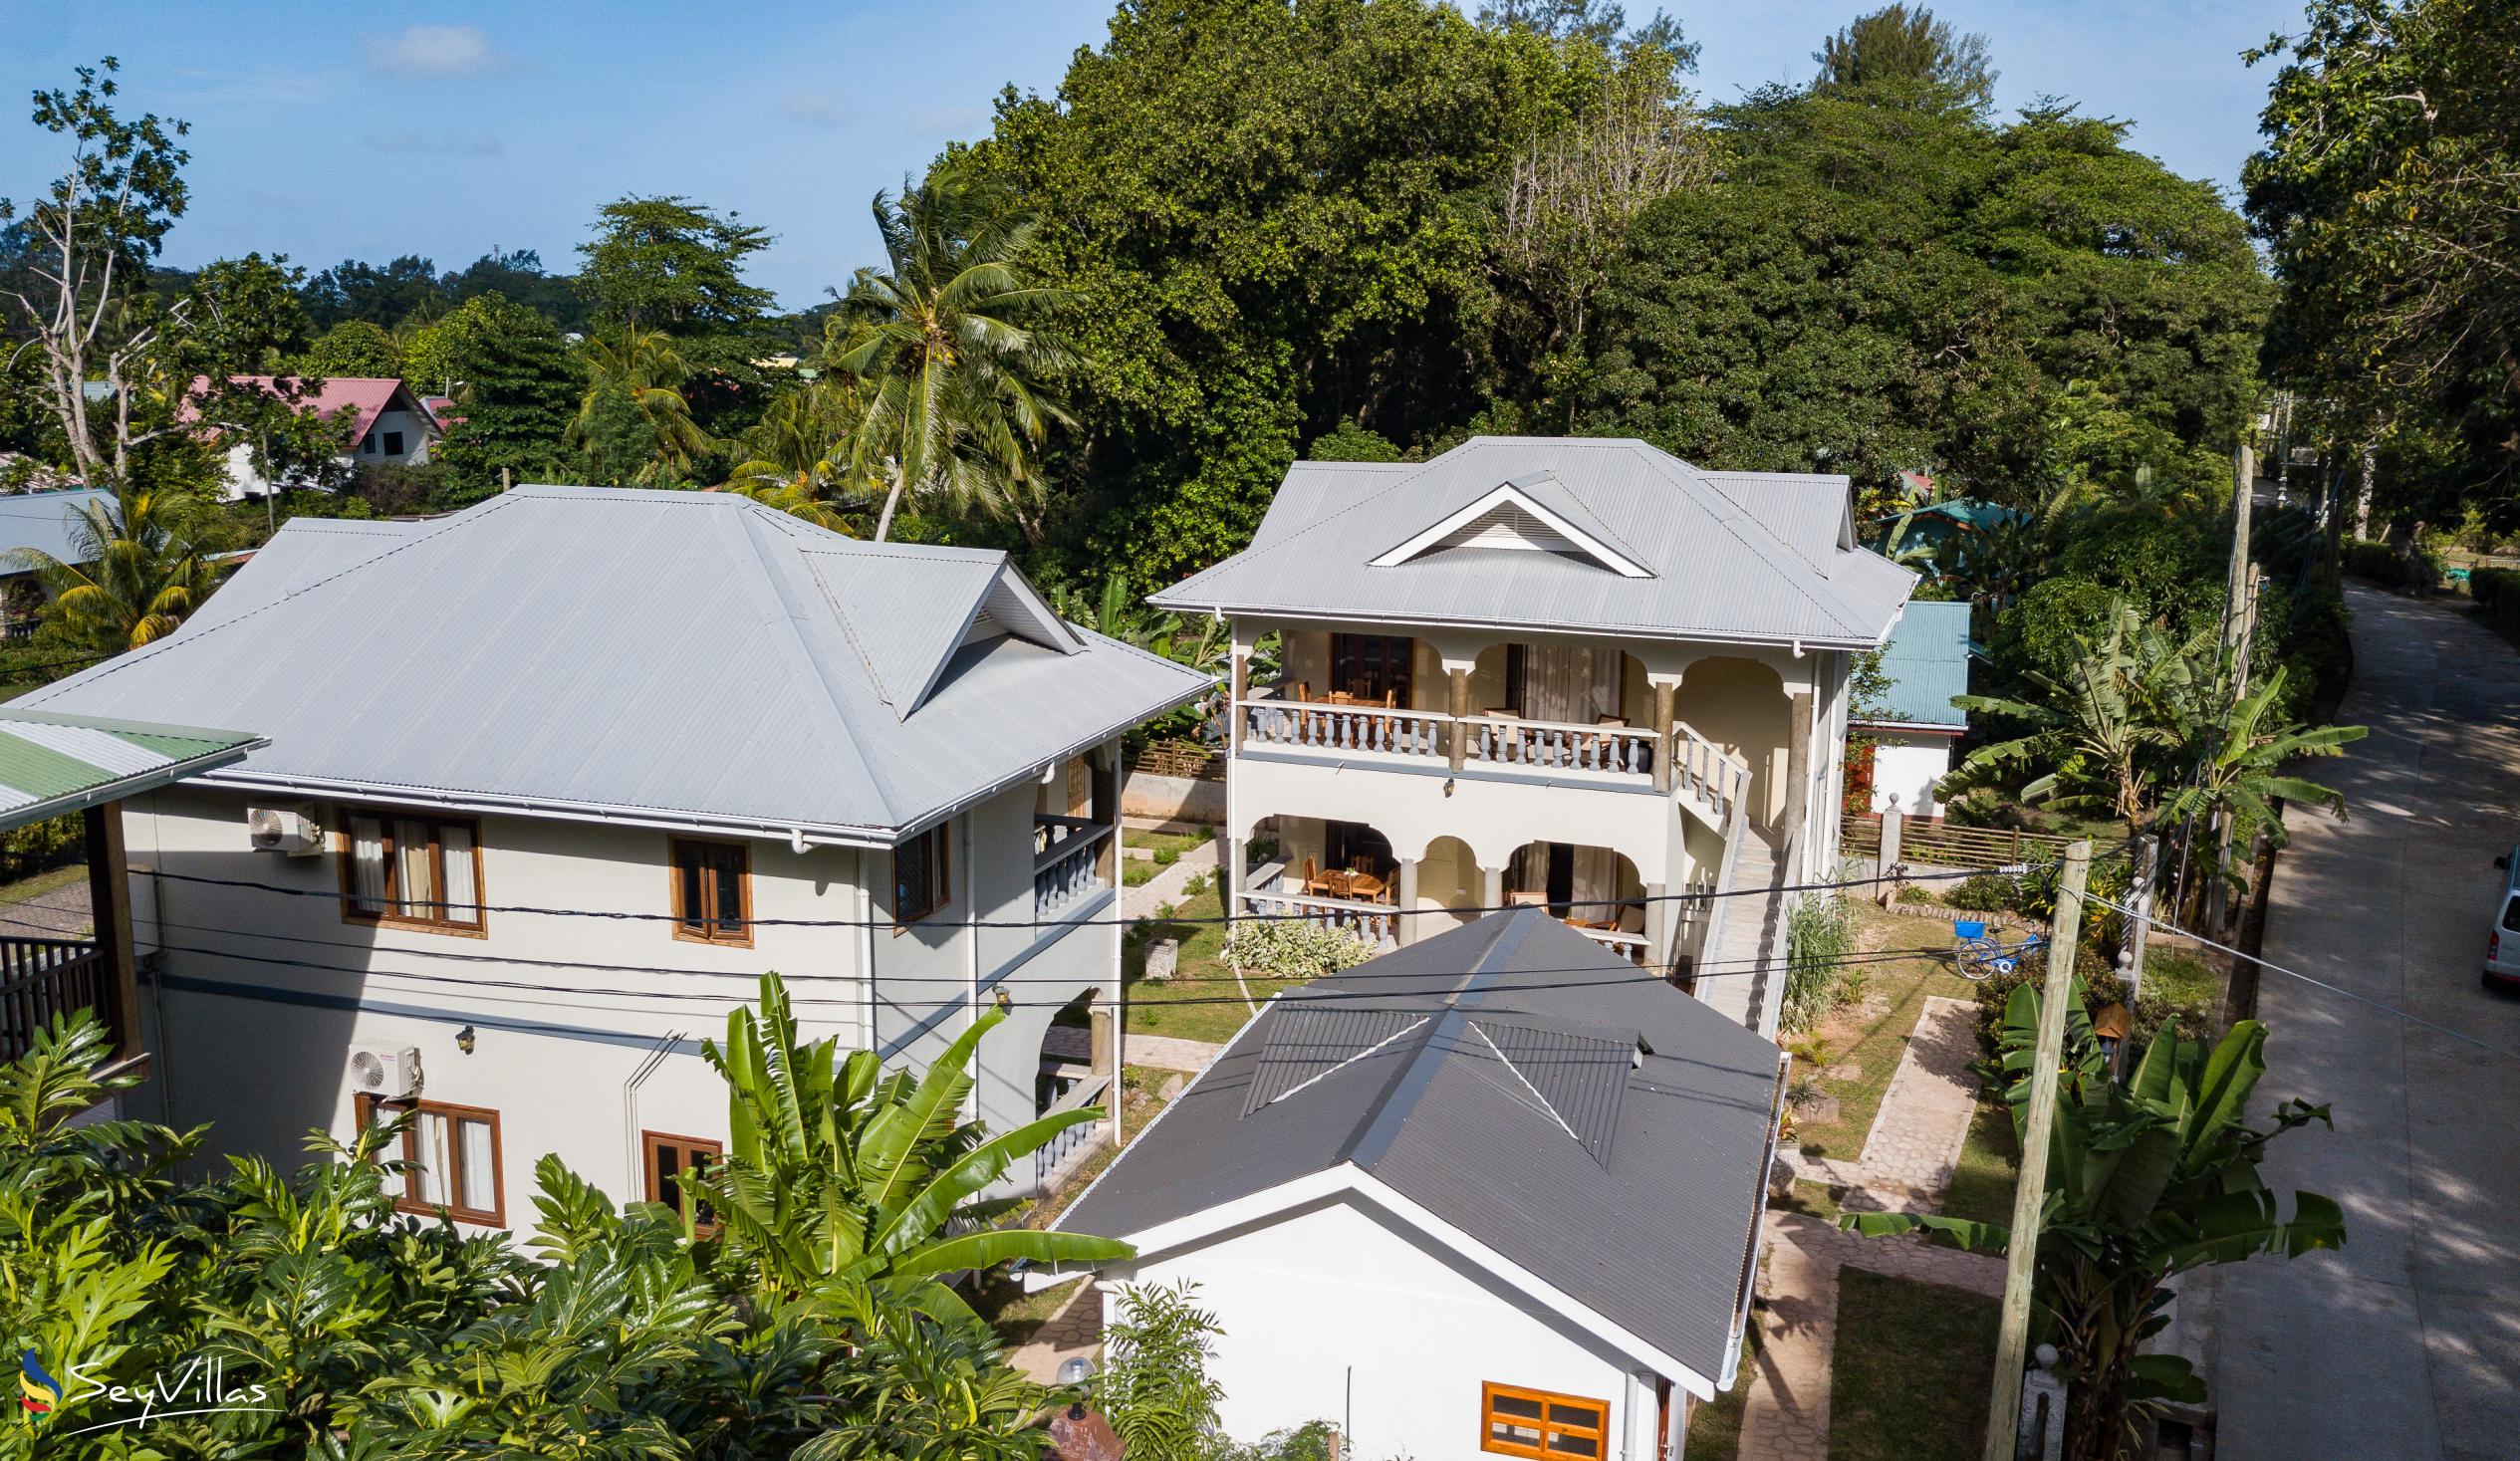 Photo 8: Maison Ed-Elle - Outdoor area - La Digue (Seychelles)